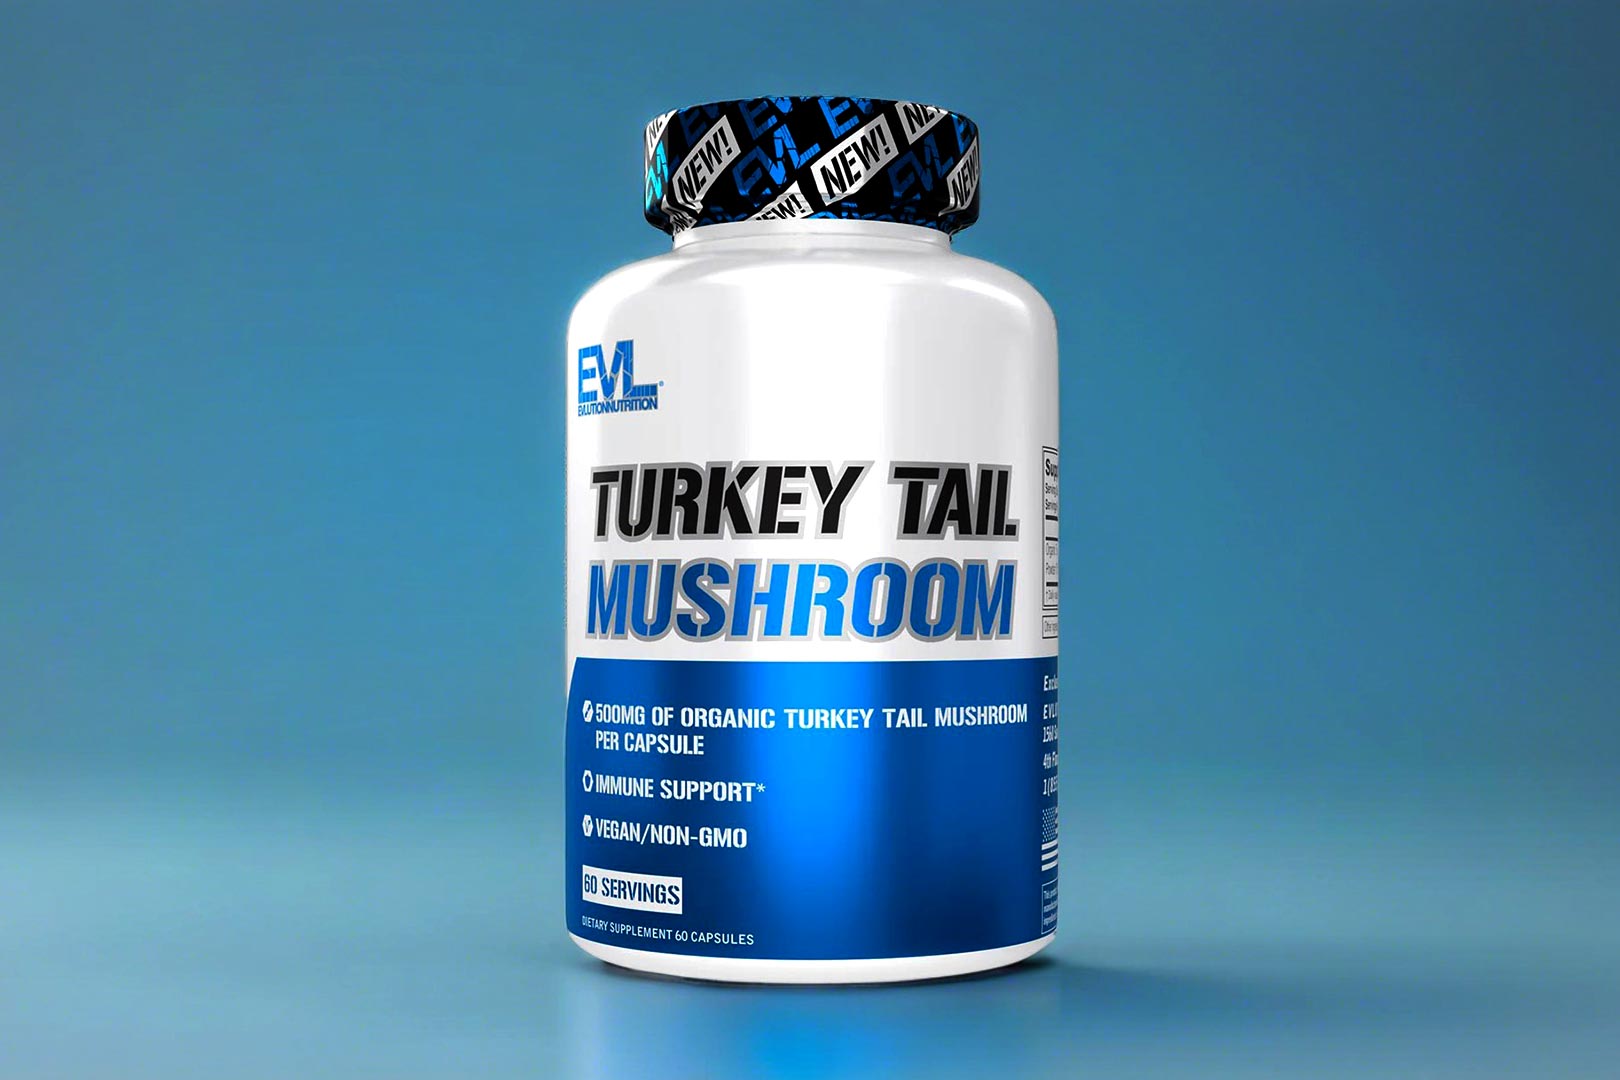 Evl Turkey Tail Mushroom